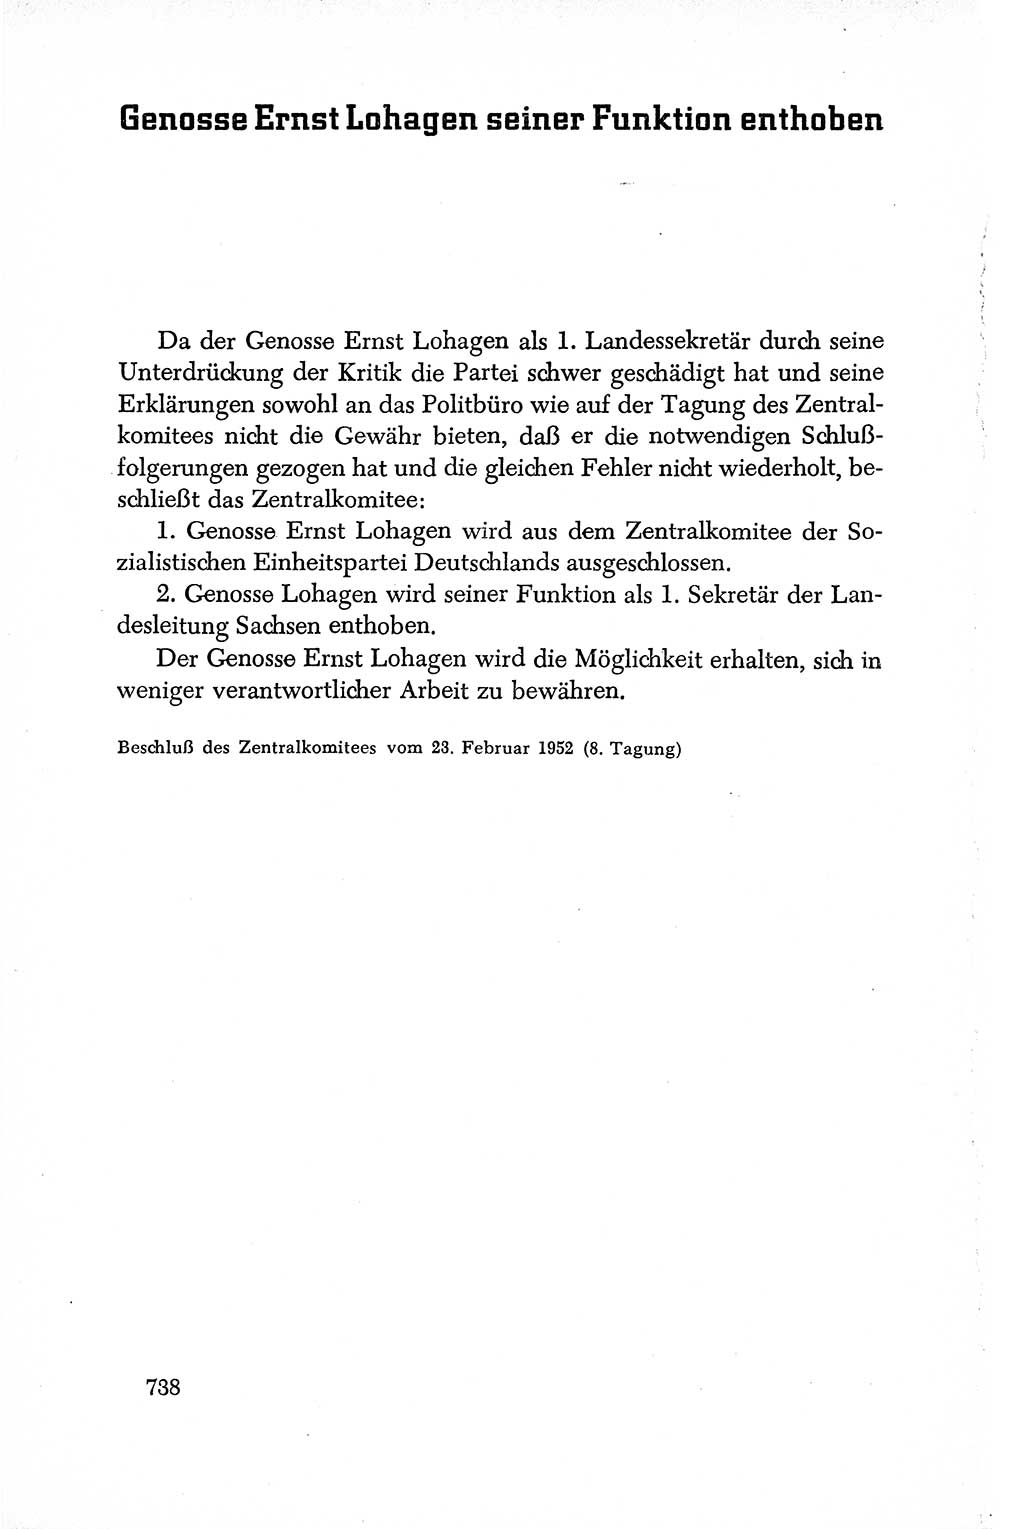 Dokumente der Sozialistischen Einheitspartei Deutschlands (SED) [Deutsche Demokratische Republik (DDR)] 1950-1952, Seite 738 (Dok. SED DDR 1950-1952, S. 738)